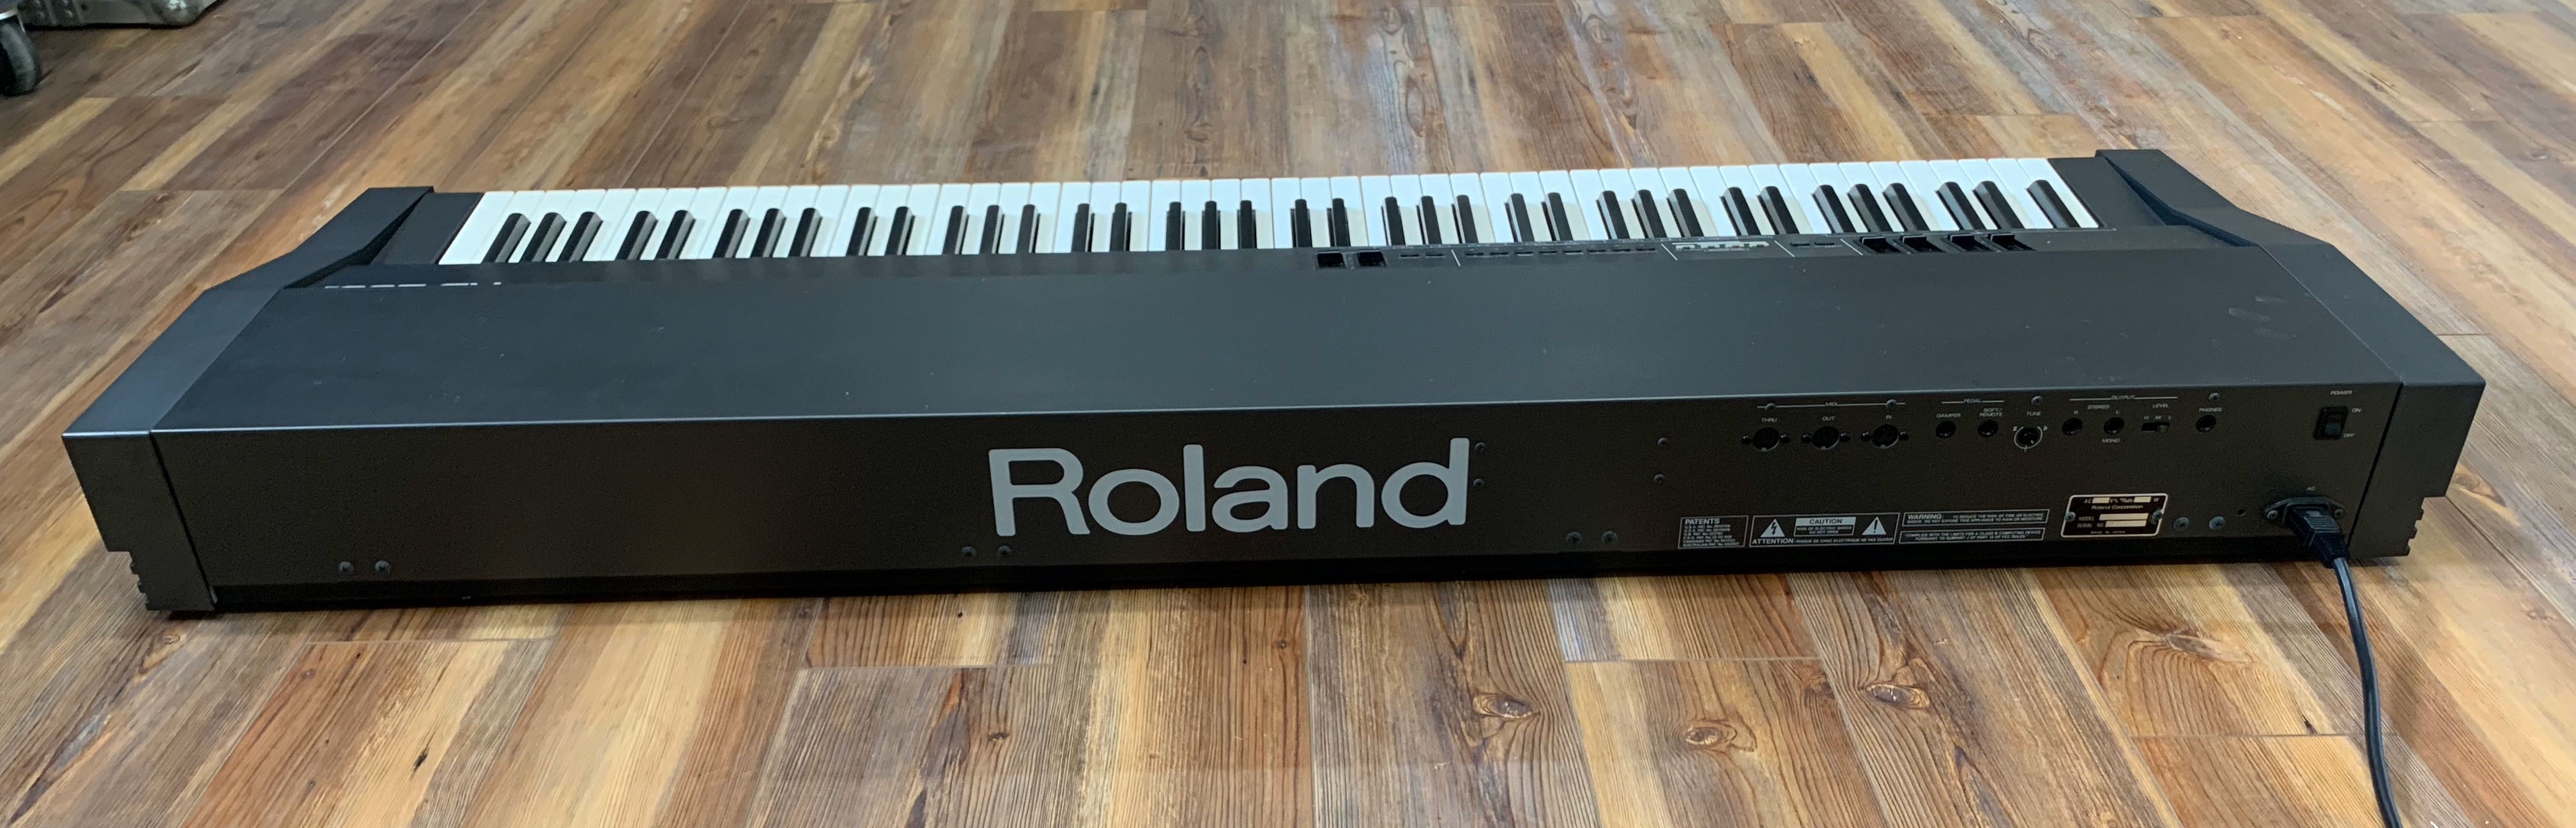 Roland RD-300S